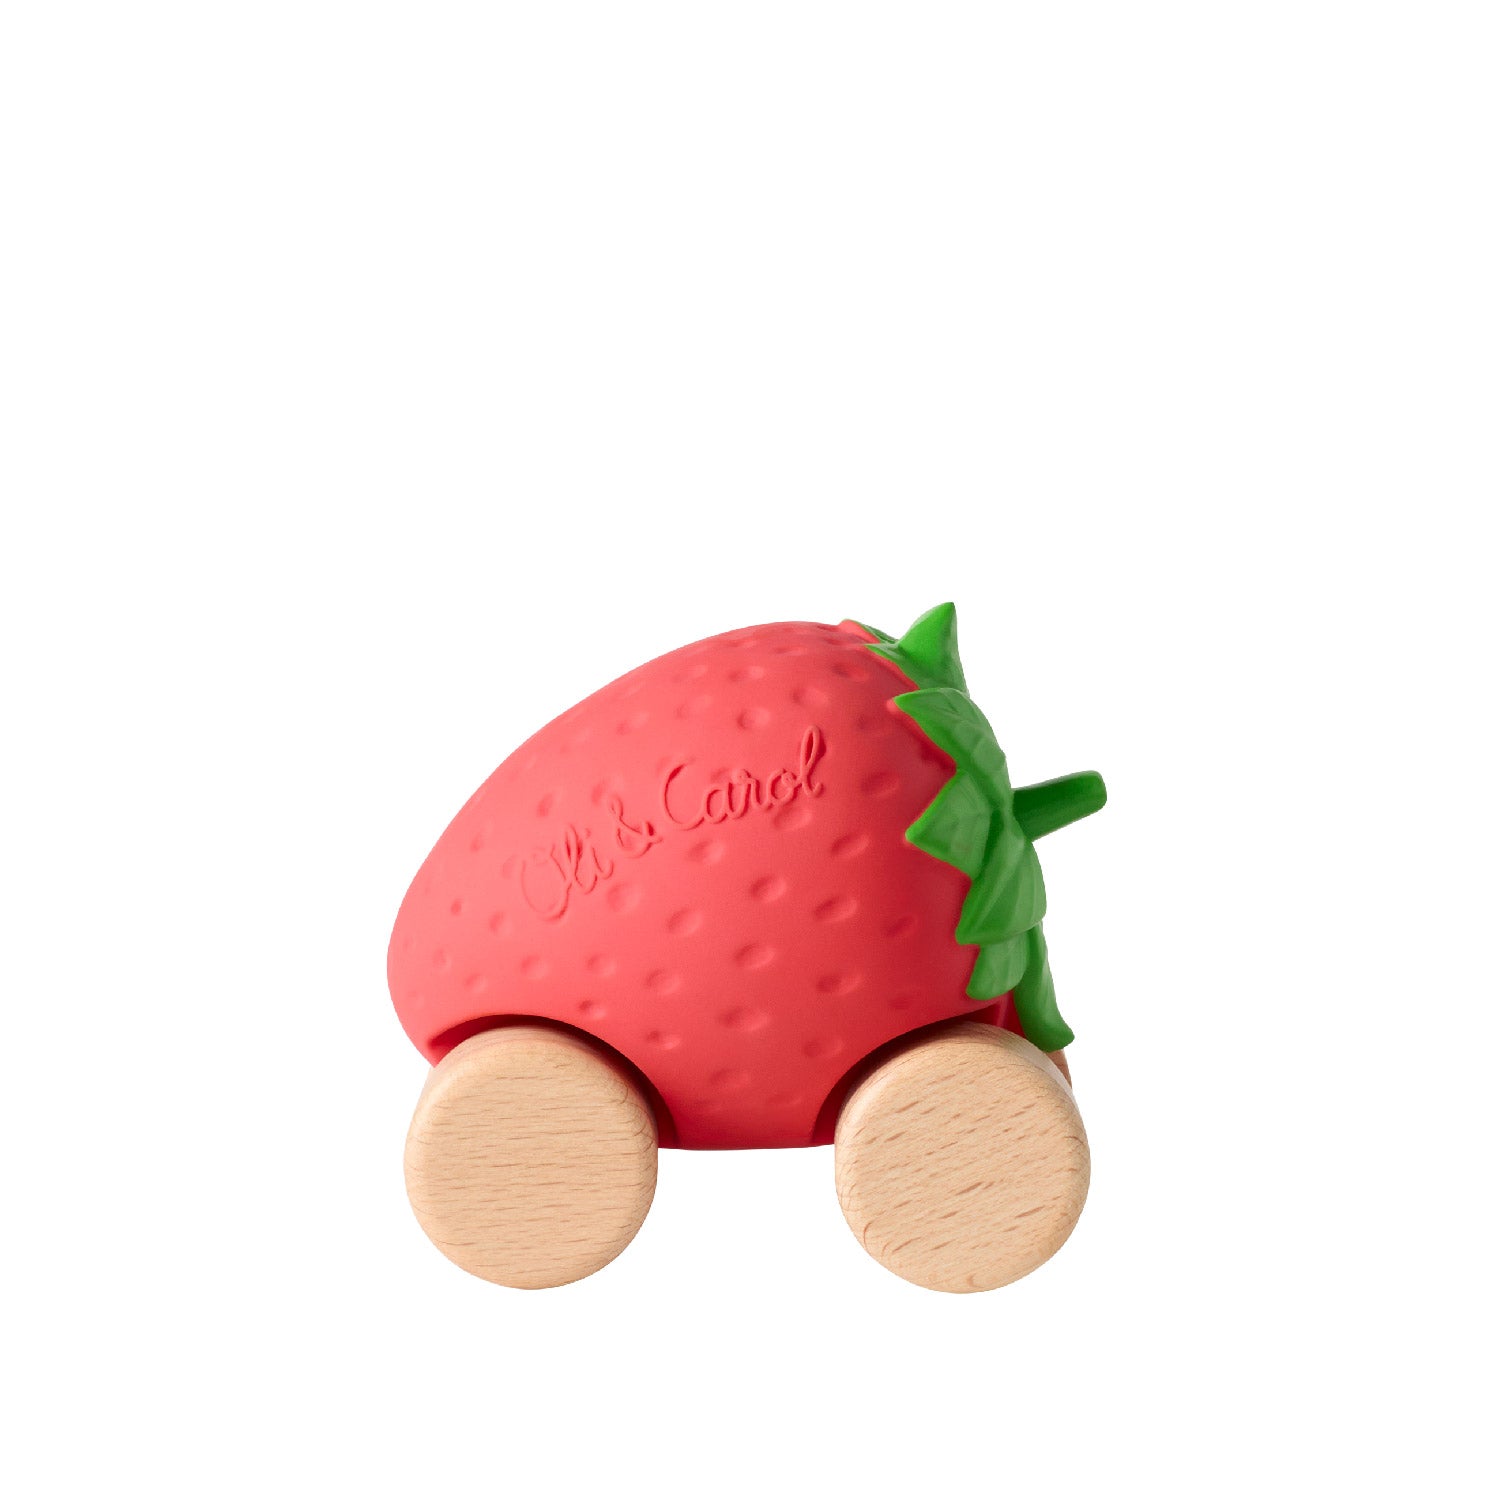 Sweetie the Strawberry Baby Car Toy - Oli&Carol